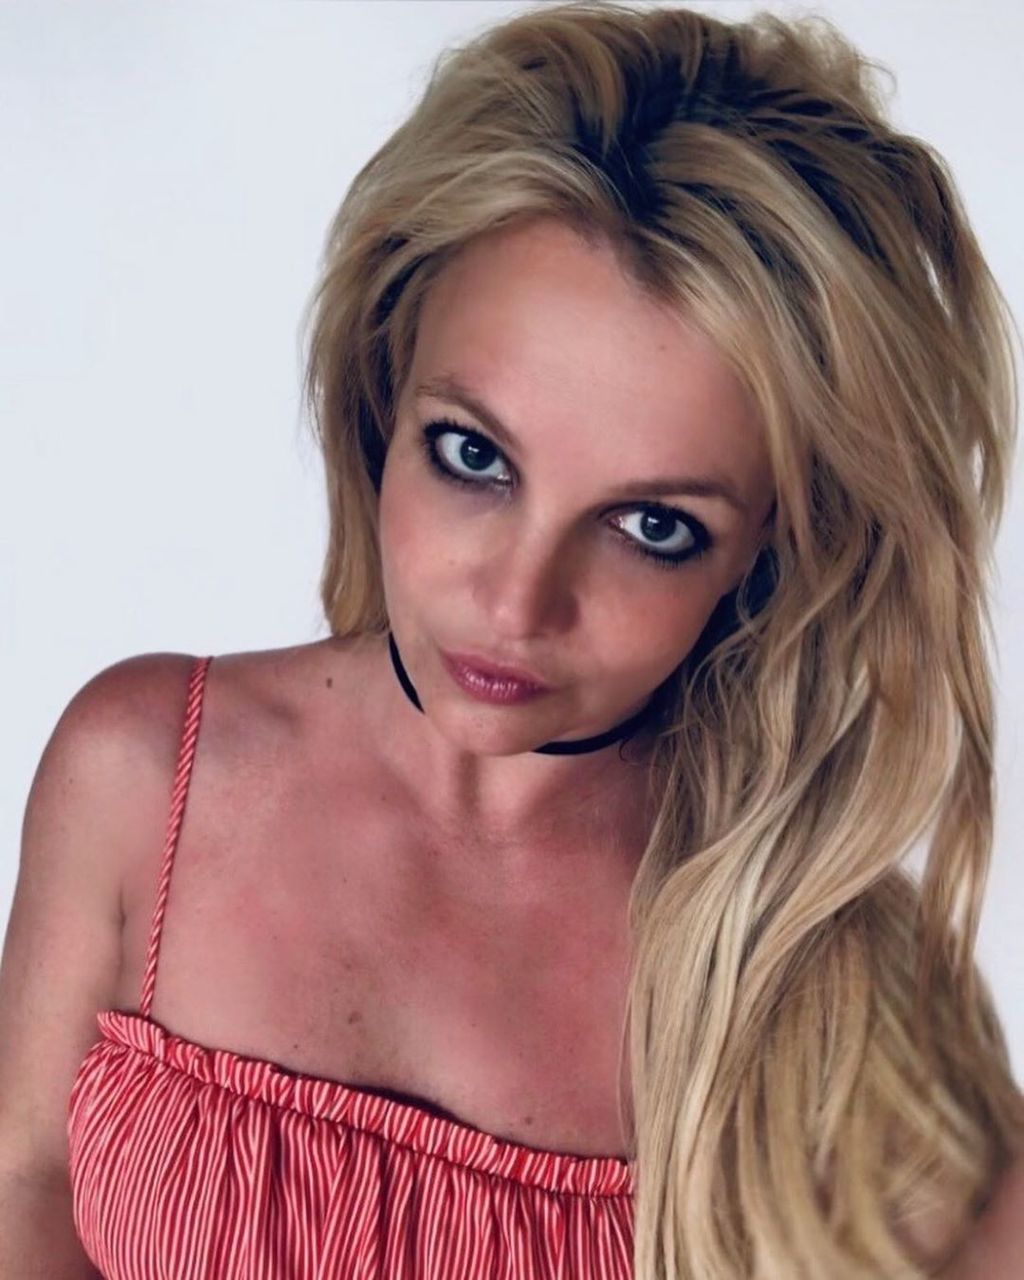 Le dicen la 'Reina del proletariado' a Britney Spears